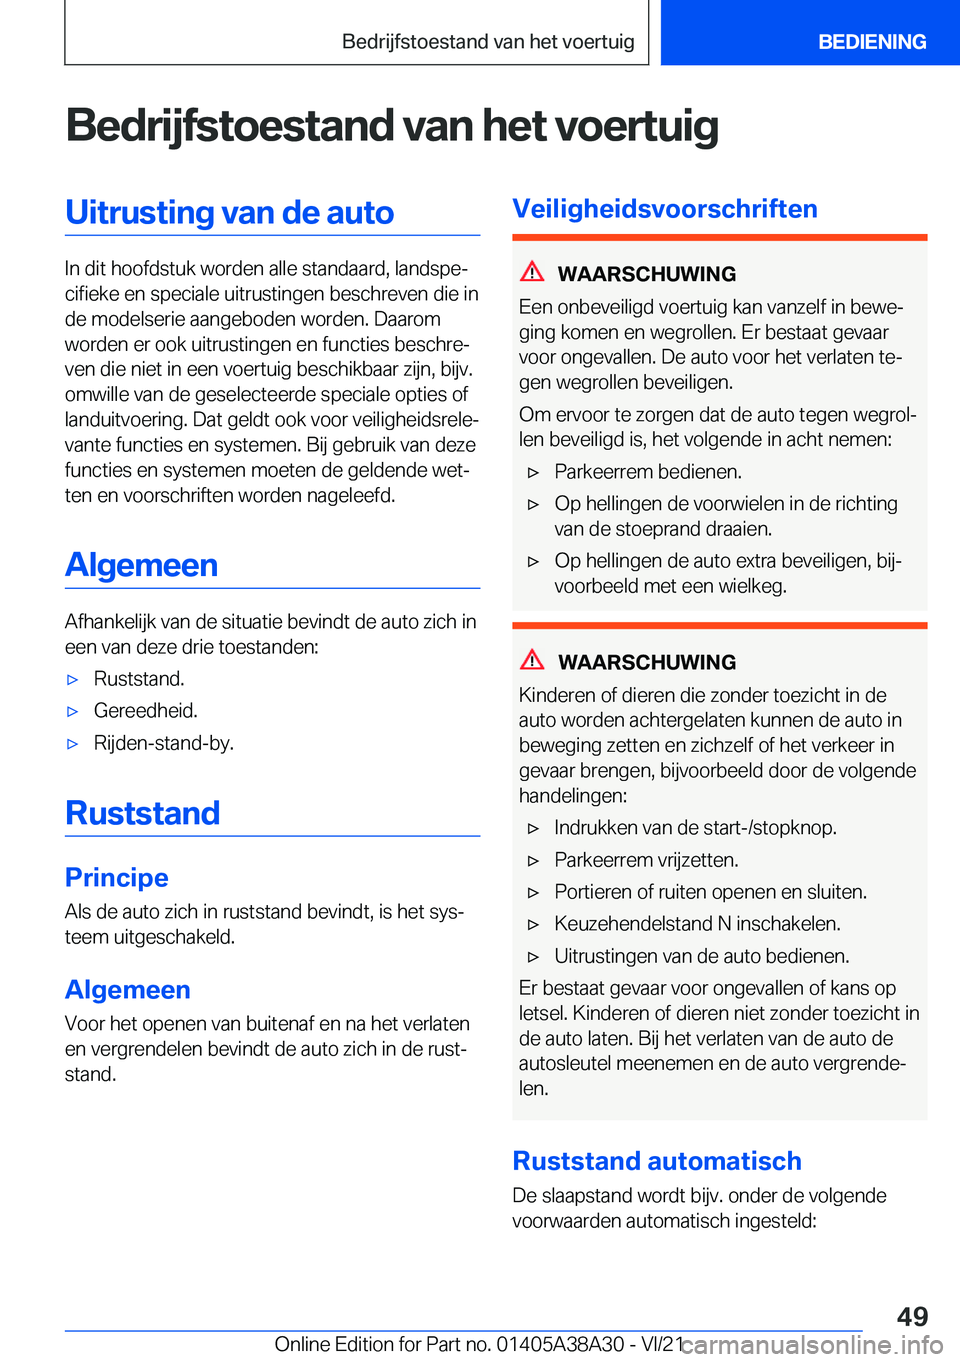 BMW 4 SERIES GRAN COUPE 2022  Instructieboekjes (in Dutch) �B�e�d�r�i�j�f�s�t�o�e�s�t�a�n�d��v�a�n��h�e�t��v�o�e�r�t�u�i�g�U�i�t�r�u�s�t�i�n�g��v�a�n��d�e��a�u�t�o
�I�n��d�i�t��h�o�o�f�d�s�t�u�k��w�o�r�d�e�n��a�l�l�e��s�t�a�n�d�a�a�r�d�,��l�a�n�d�